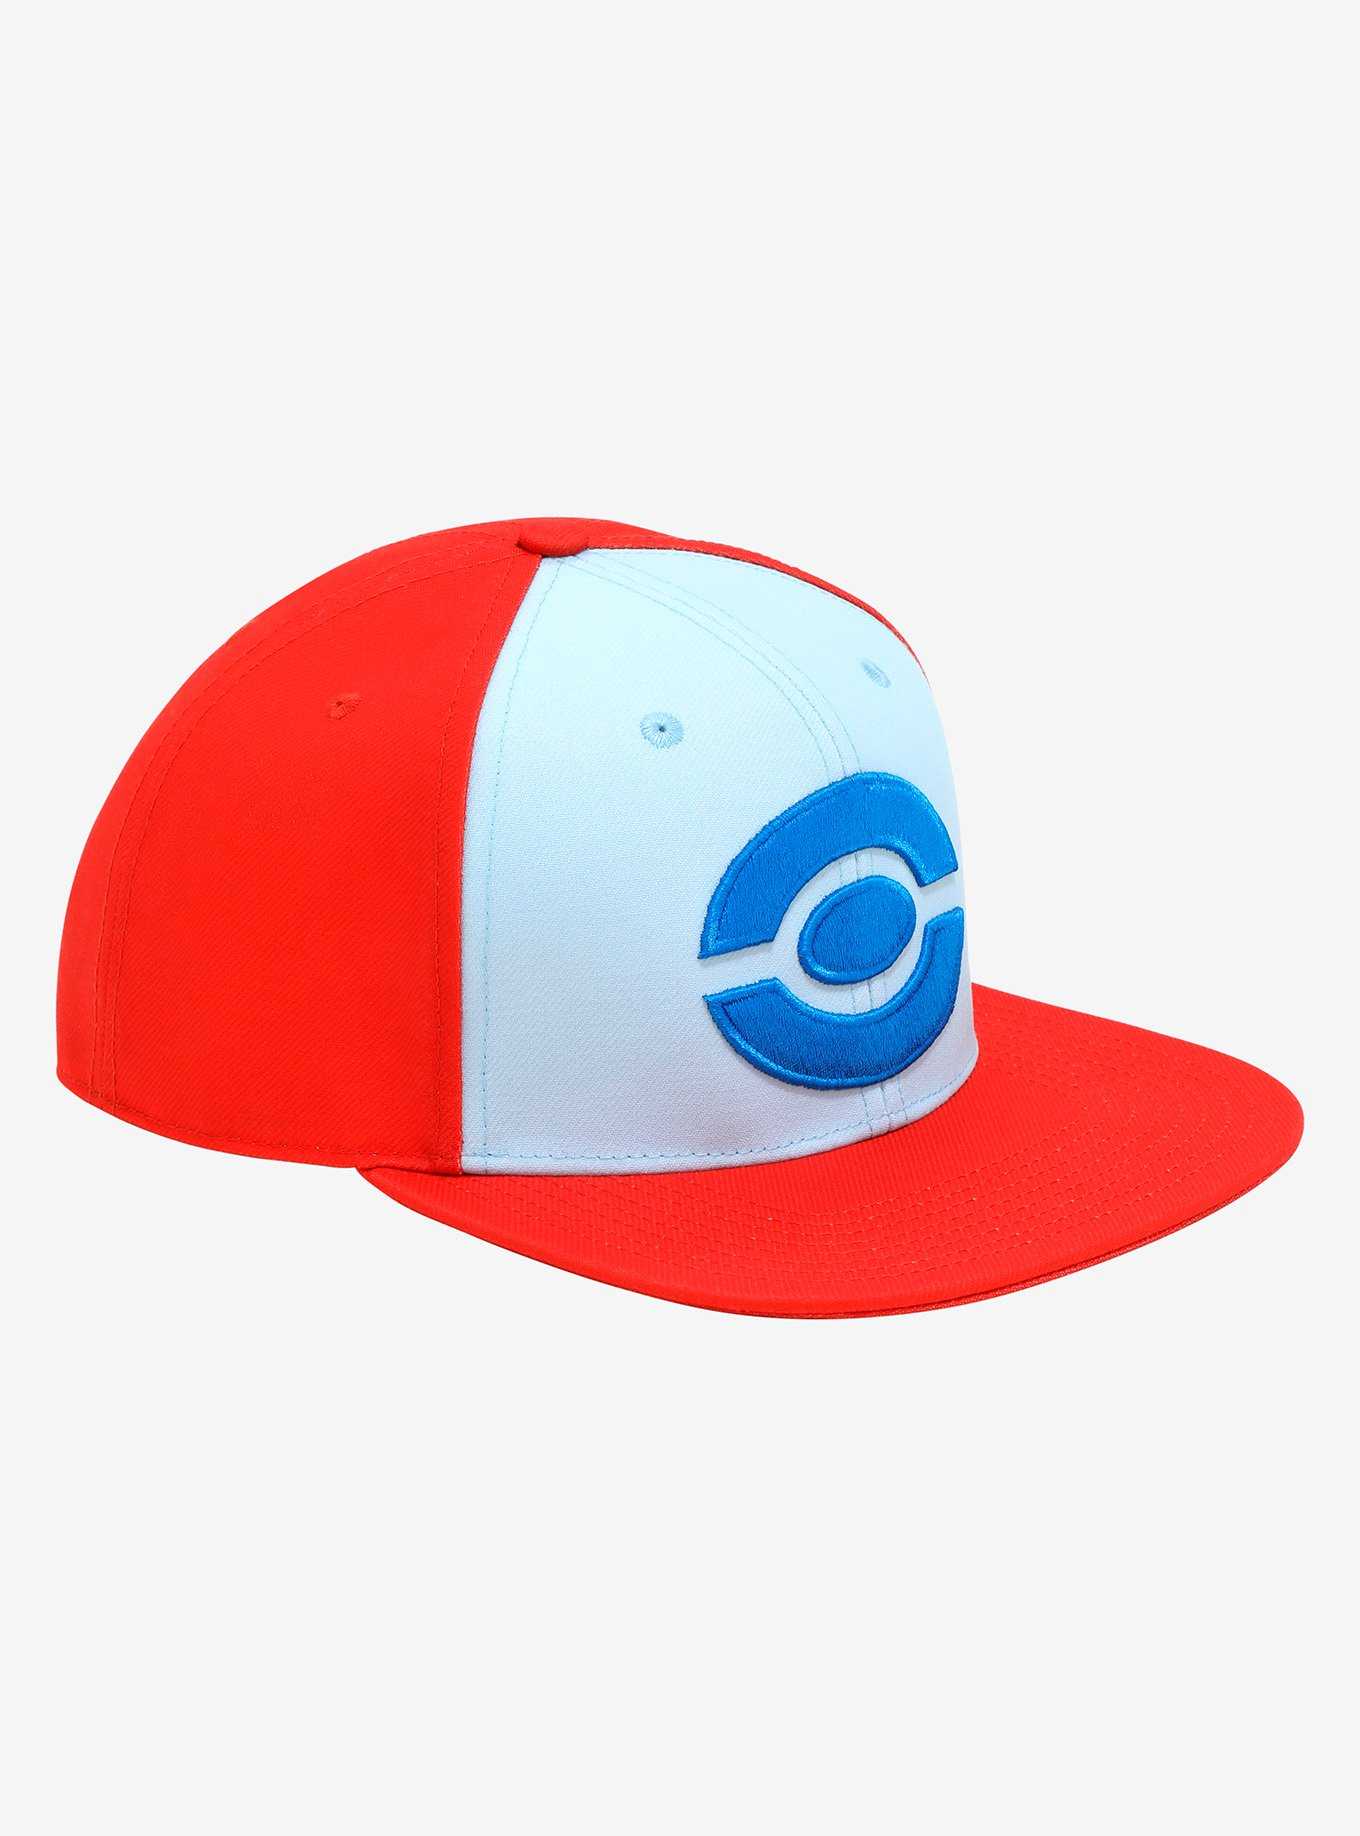 Pokémon Ash Unova Replica Ball Cap - BoxLunch Exclusive, , hi-res